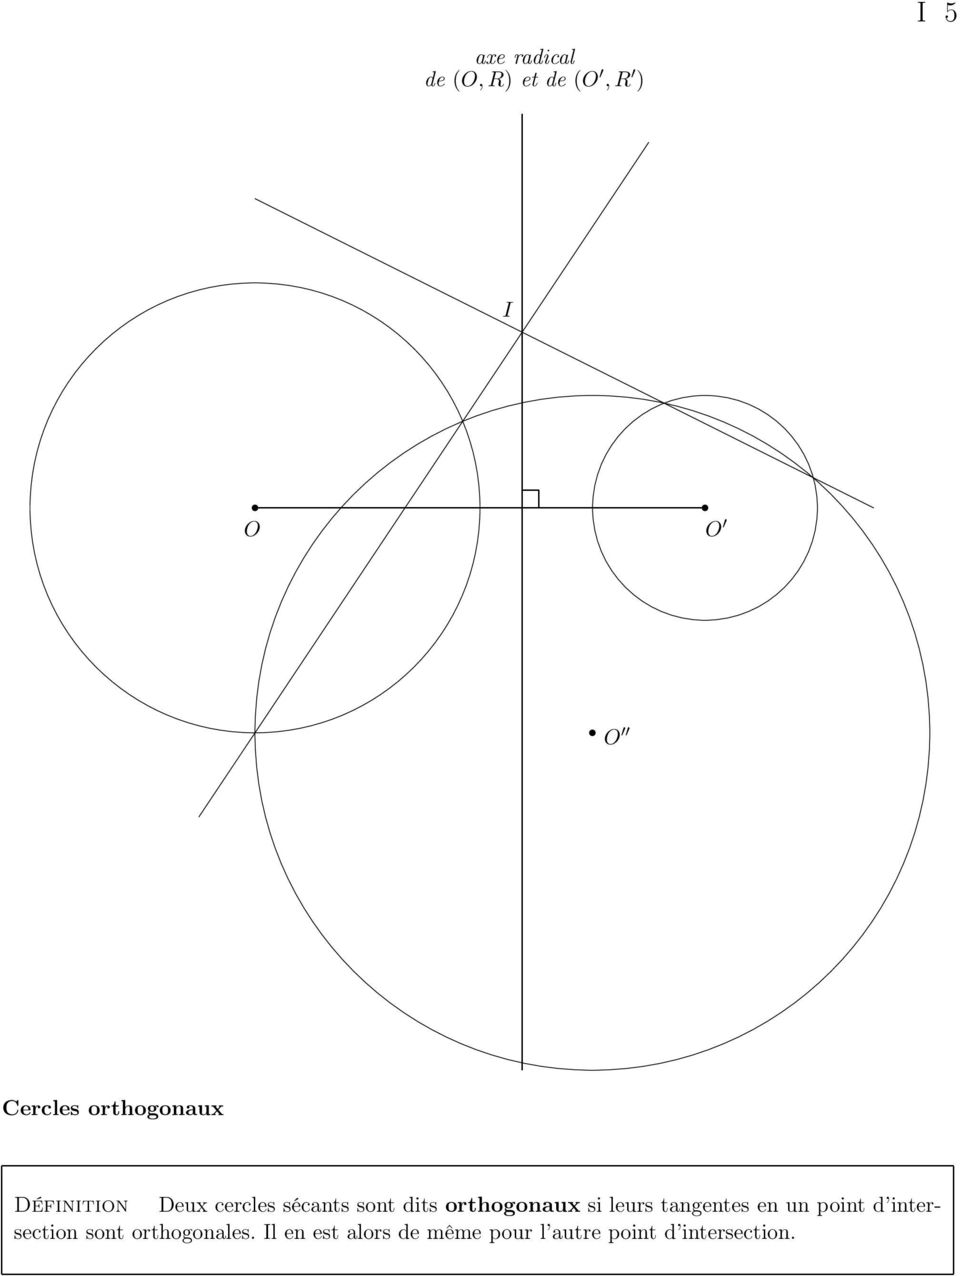 orthogonaux si leurs tangentes en un point d intersection